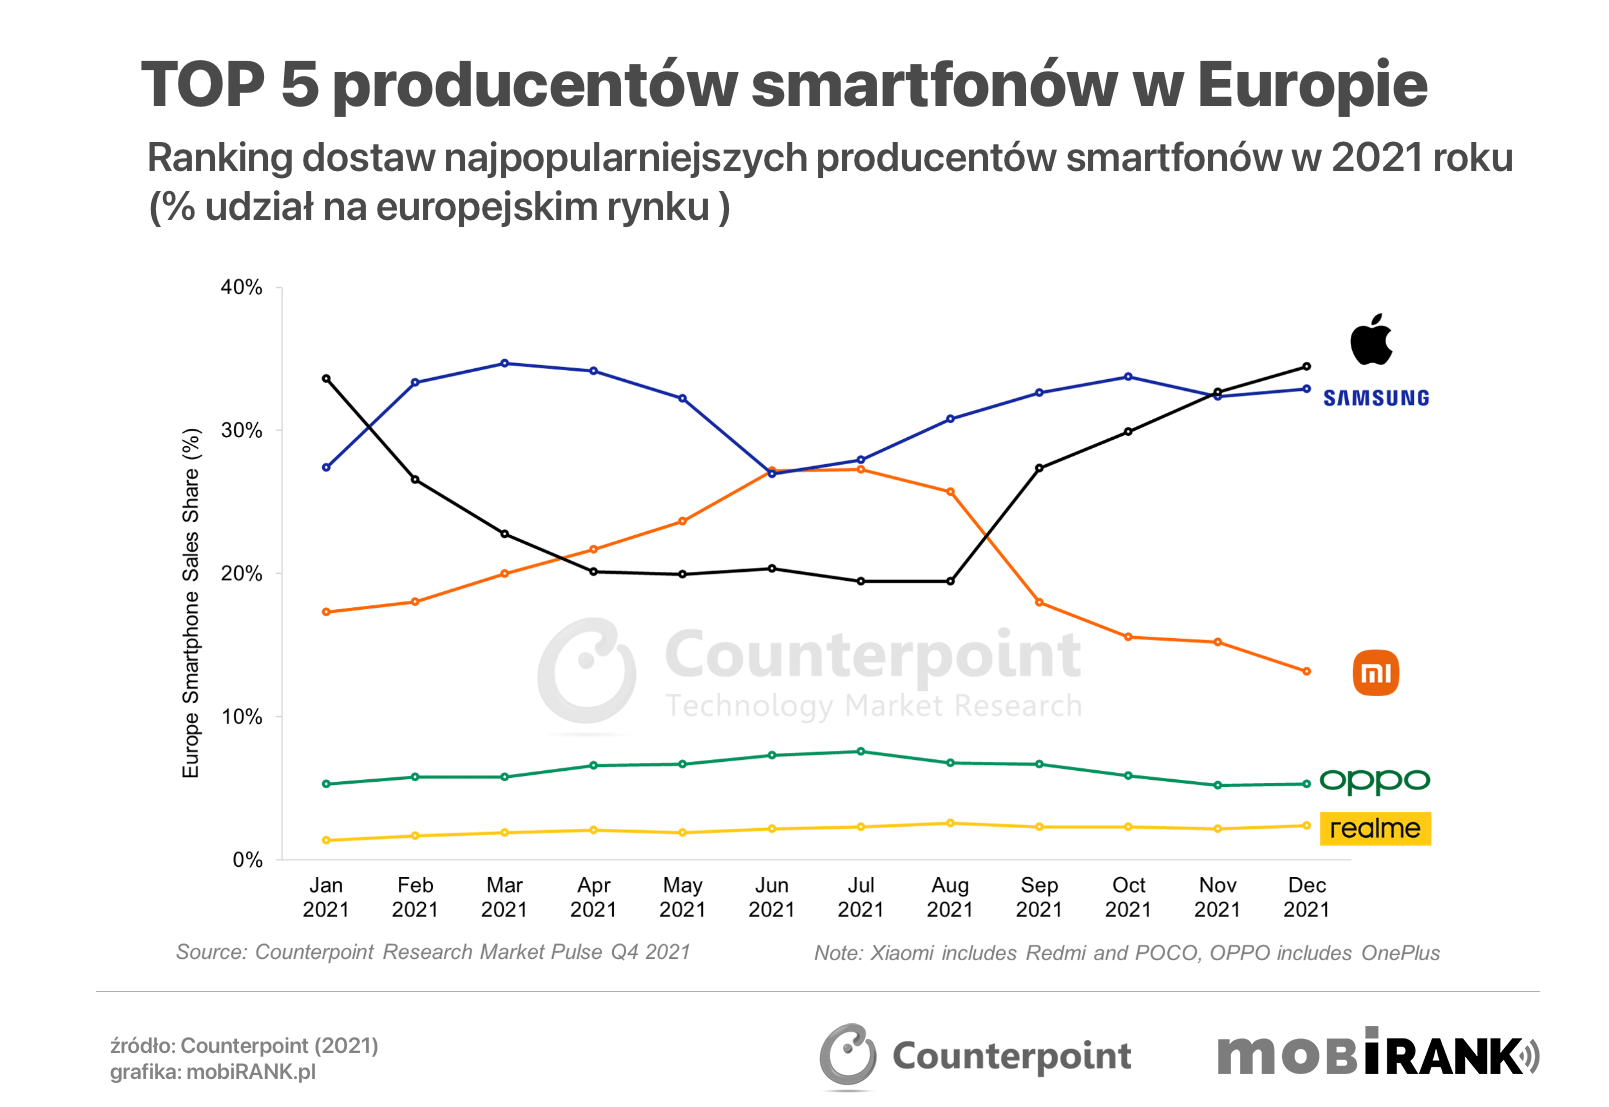 TOP 5 producentów smartfonów w Europie w 2021 roku